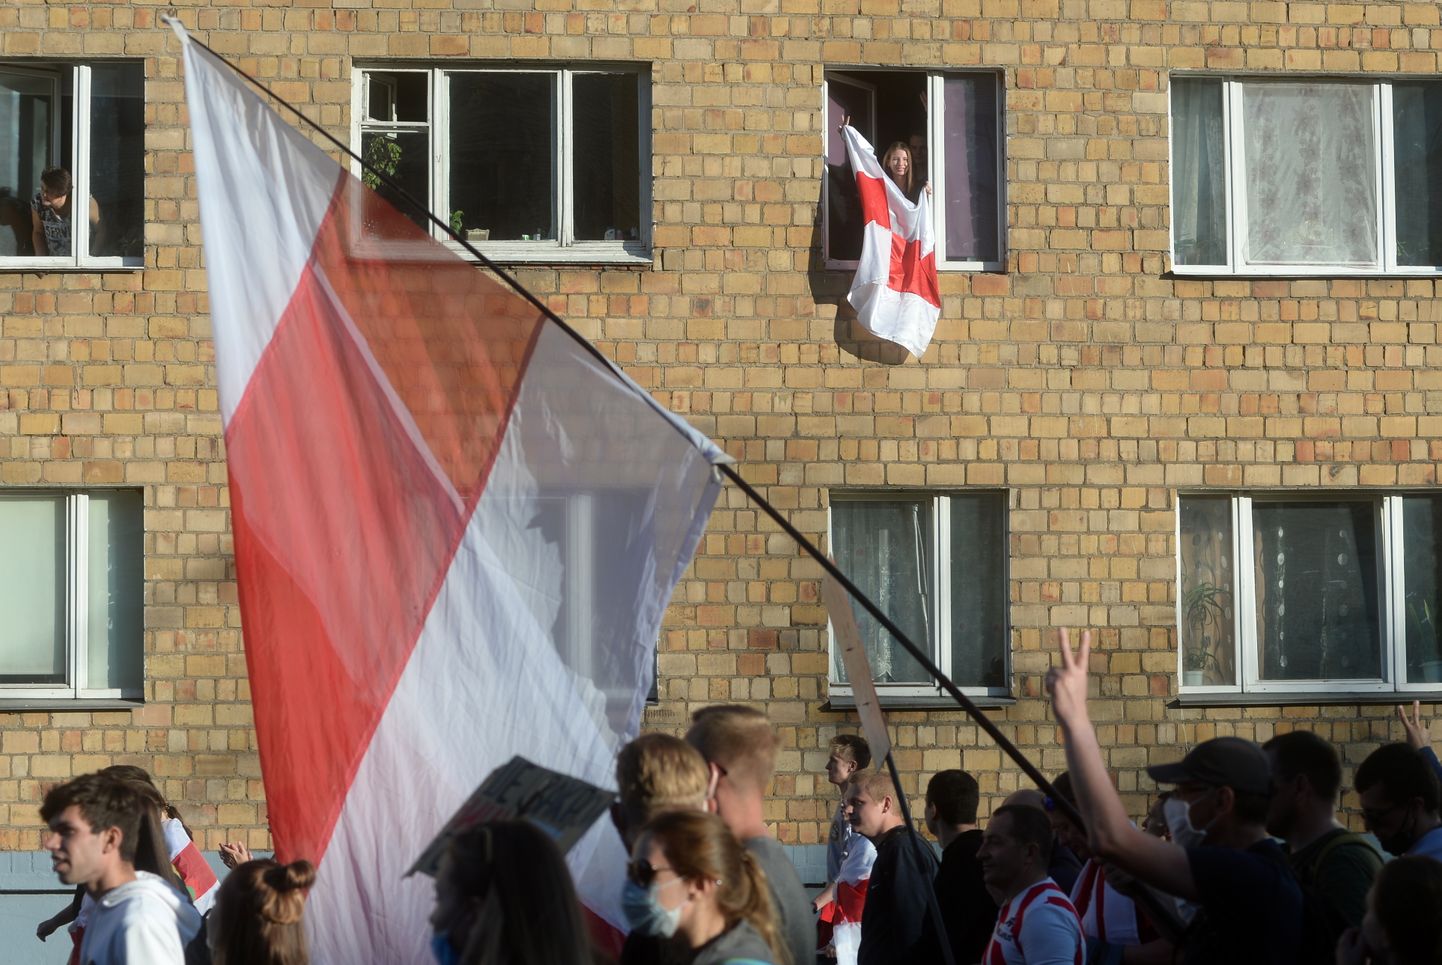 Puna-valged lipud Minski tänaval ja kortermaja aknal. Võimud on opositsiooniga seostatava värvikombinatsiooni suhtes muutunud nii tundlikuks, et võõpavad nüüd üle kõike, mis riigis varem seda tooni värvitud.